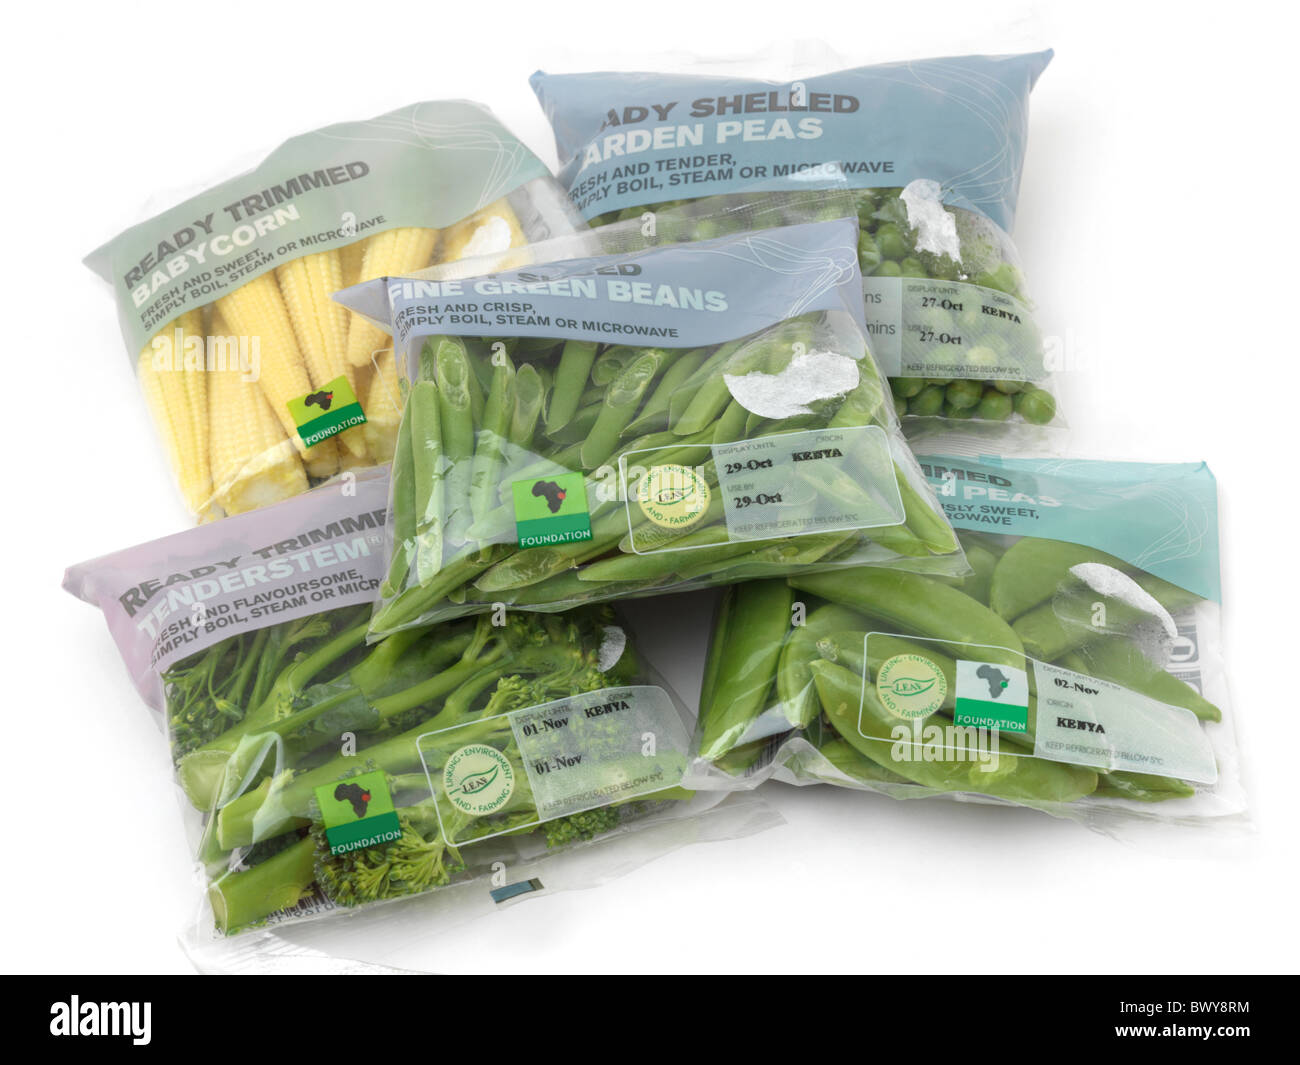 Jilote Tenderstem keniano, brócoli, judías verdes finas, jardín y guisantes guisantes Sugar Snap en el embalaje Foto de stock